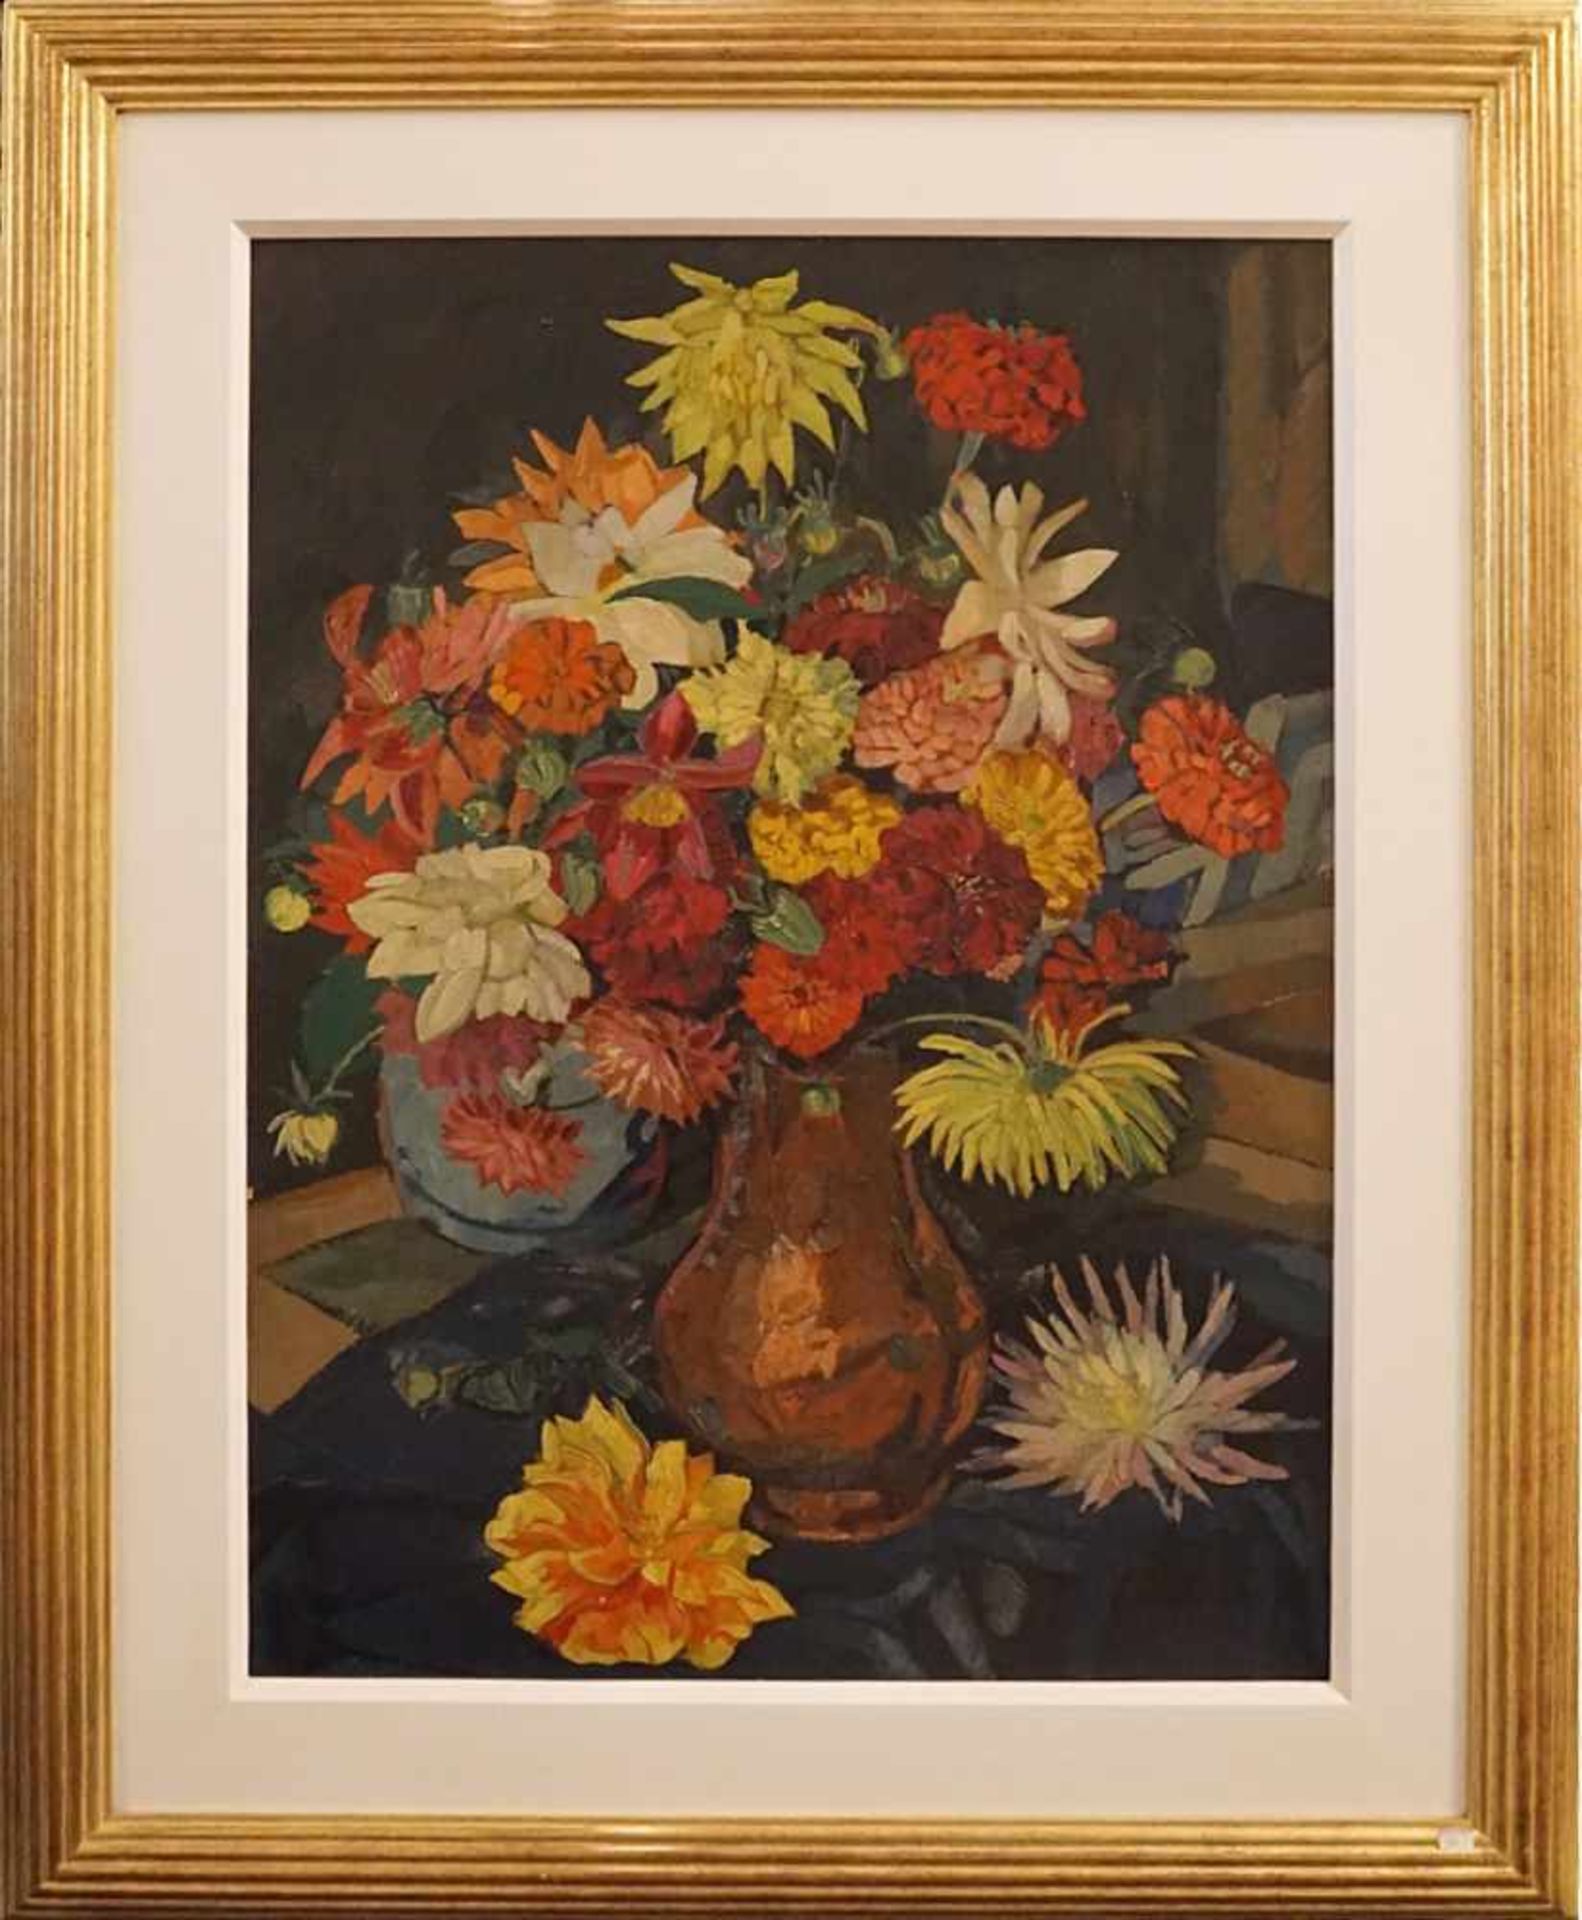 1 Ölgemälde "Blumenstrauß" R.u. sign. Carl REISER(wohl Prof. C.R. 1877-1950) Öl/Karton ca. 77x56cm - Bild 2 aus 2